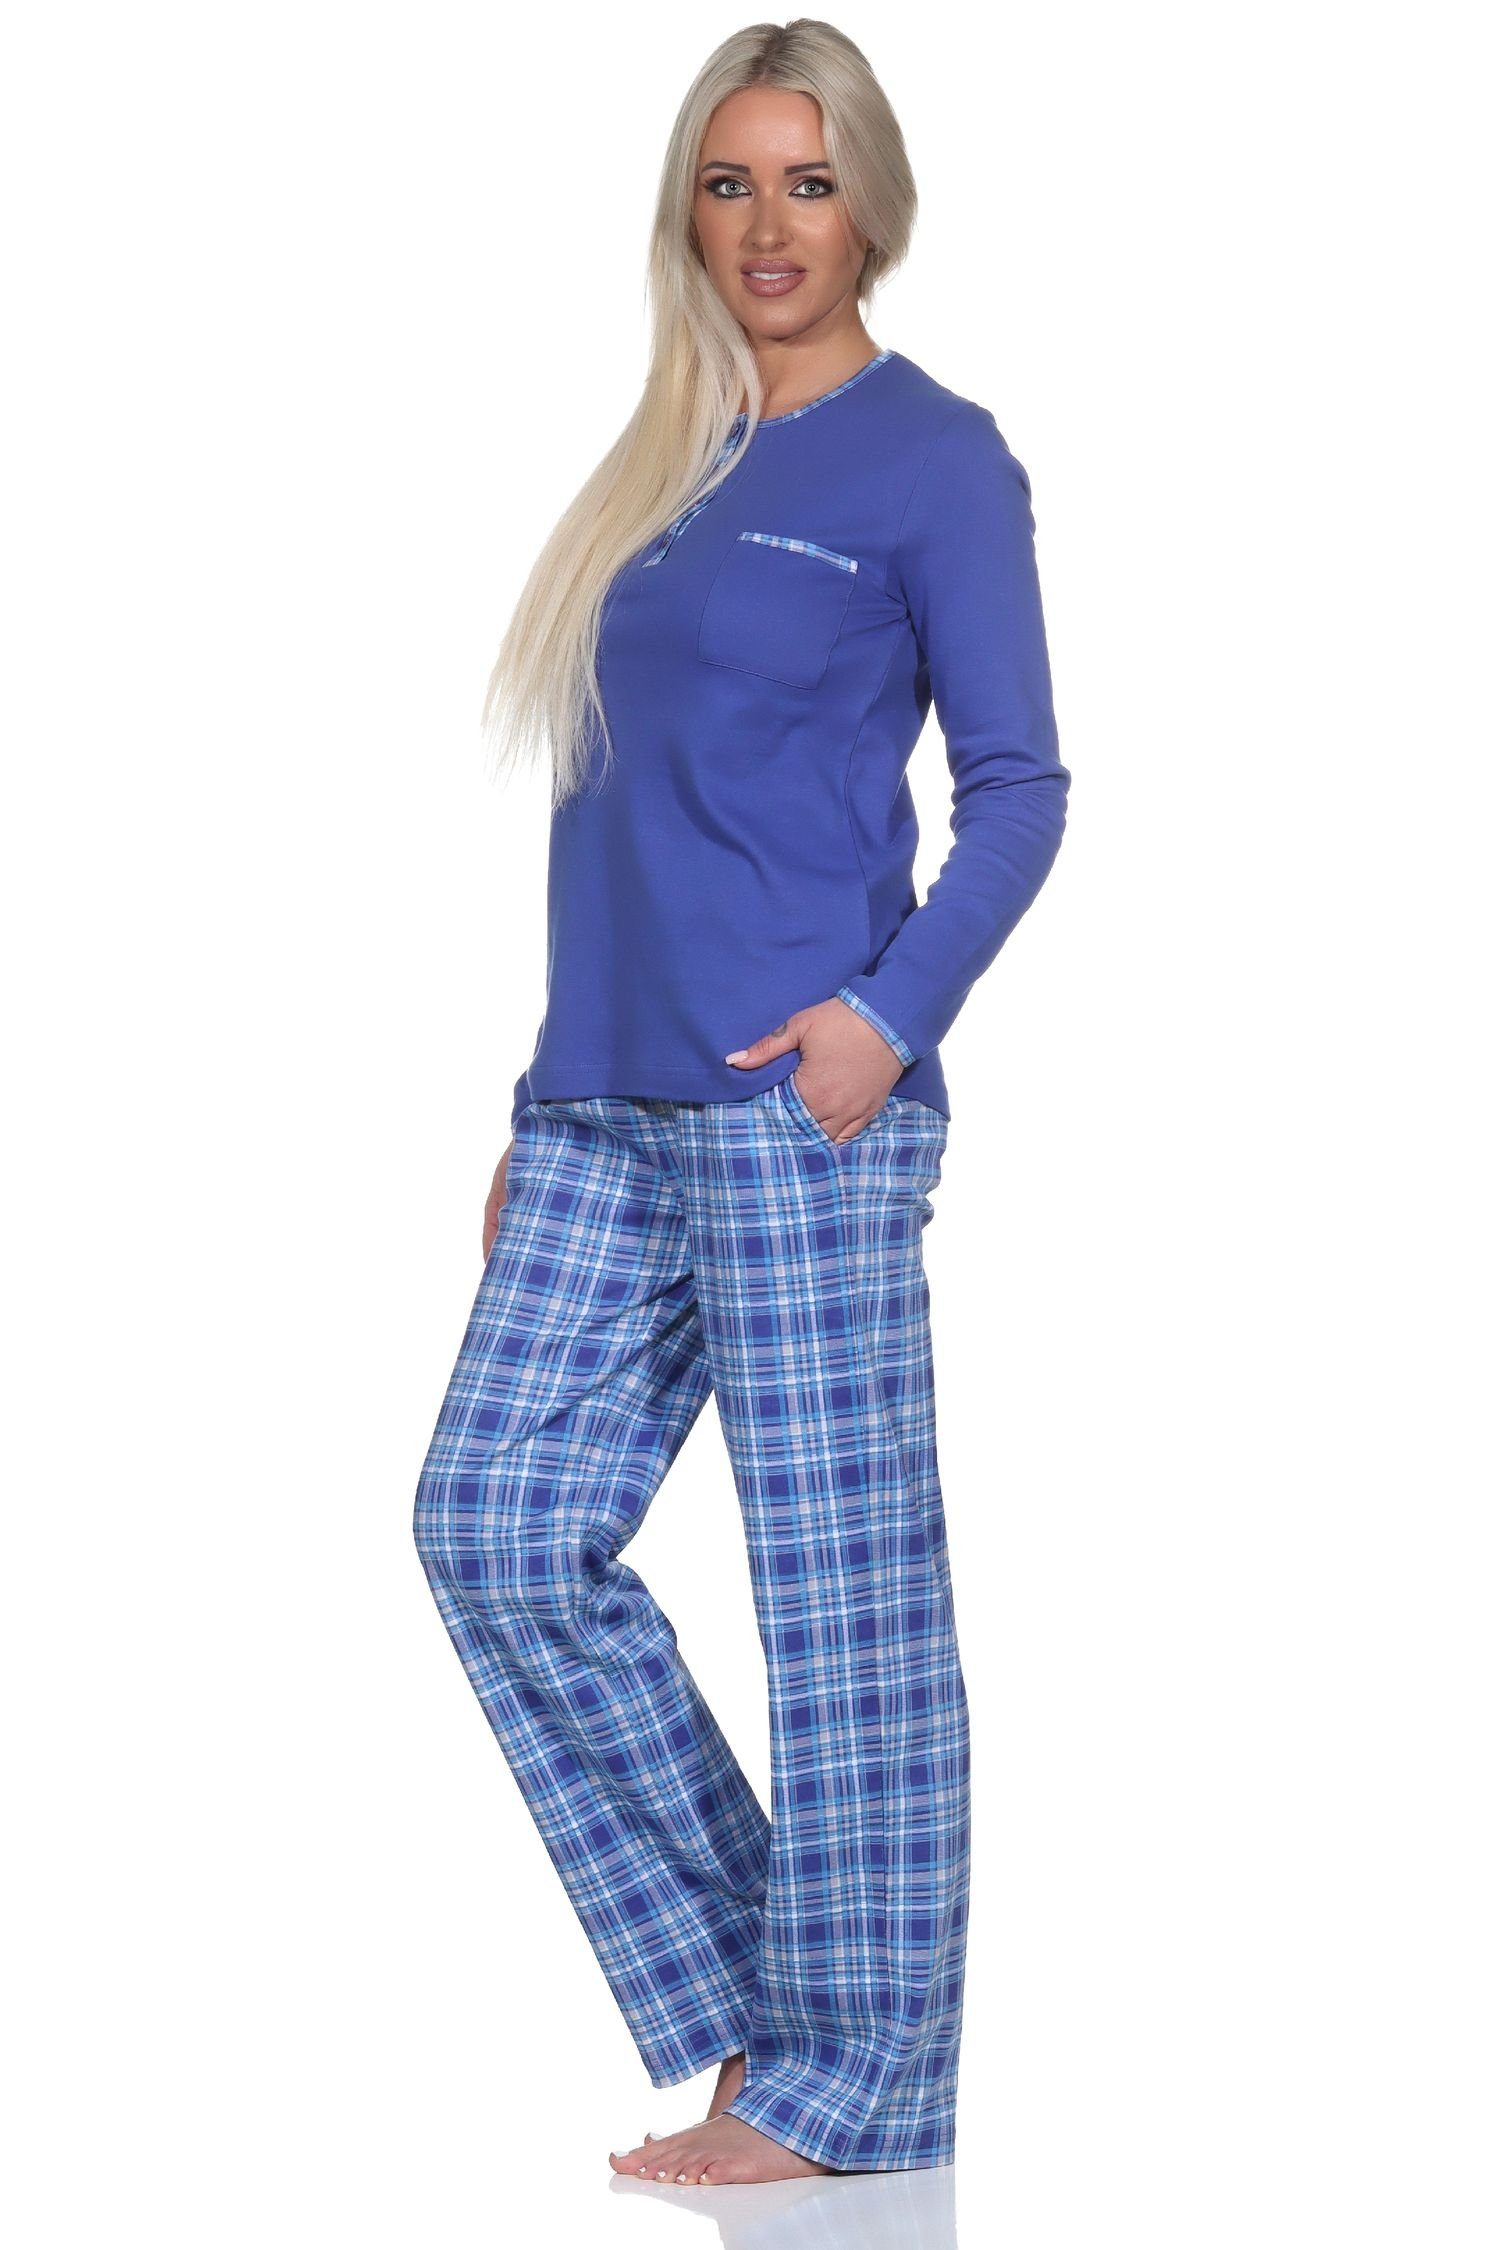 Normann blau karierter Pyjama Hose Schlafanzug Damen mit Interlock in Kuschel Qualität